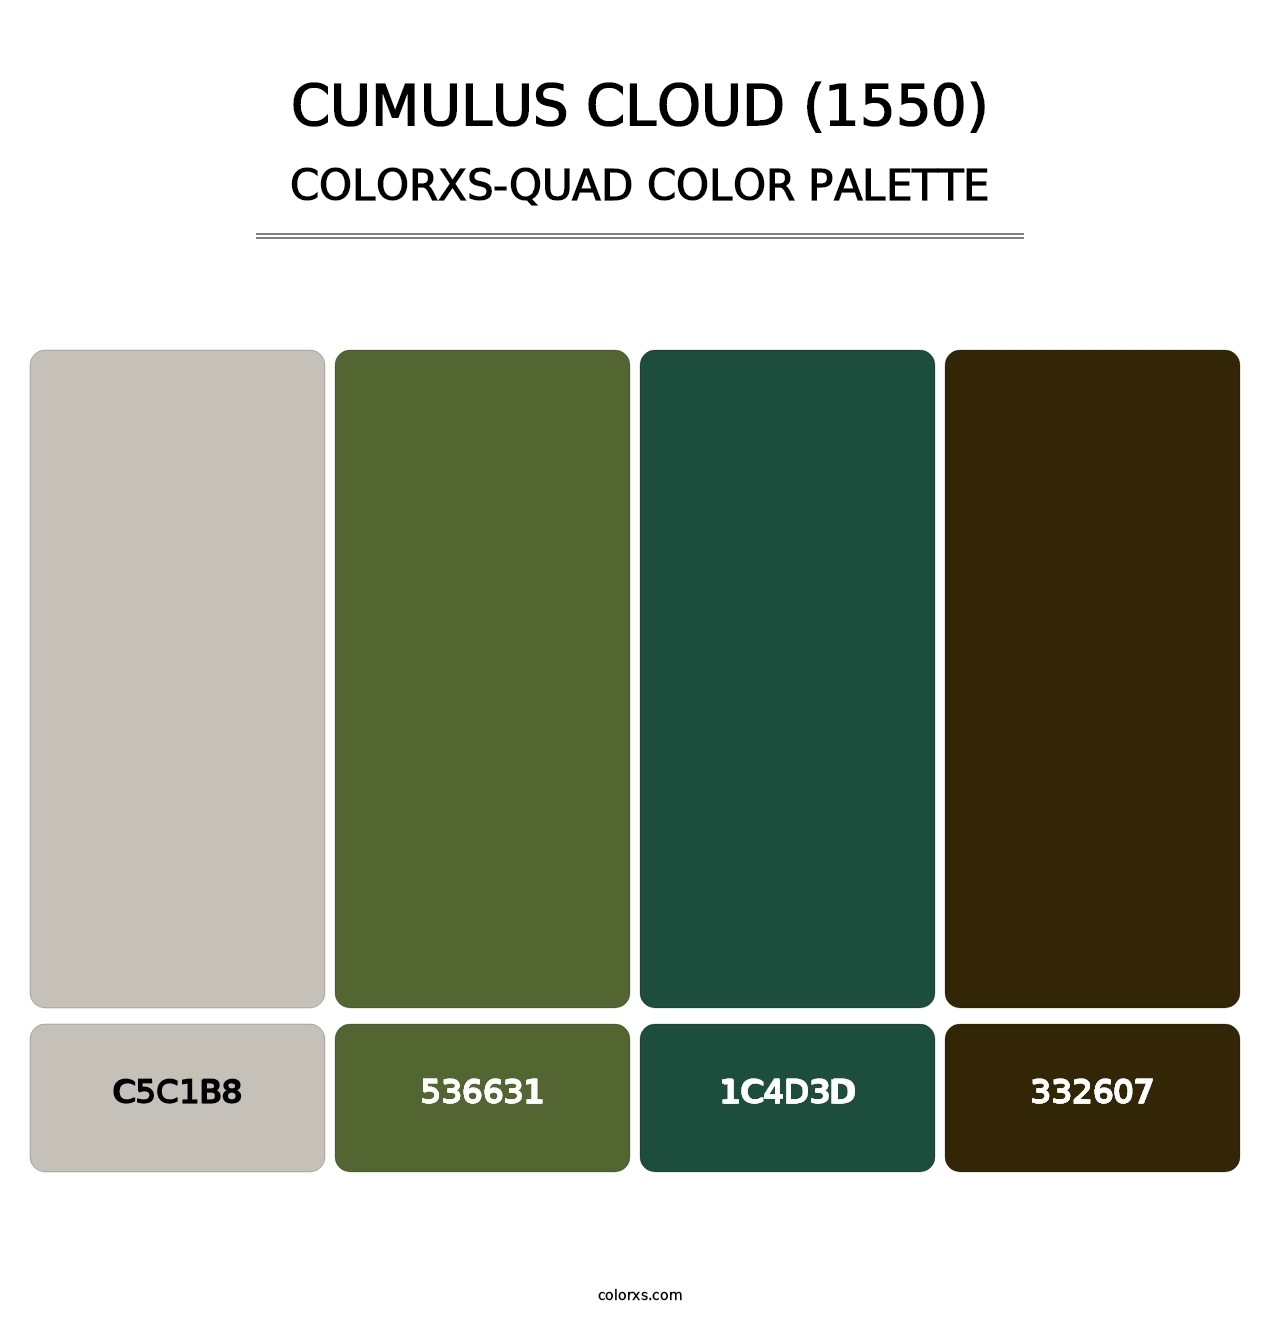 Cumulus Cloud (1550) - Colorxs Quad Palette